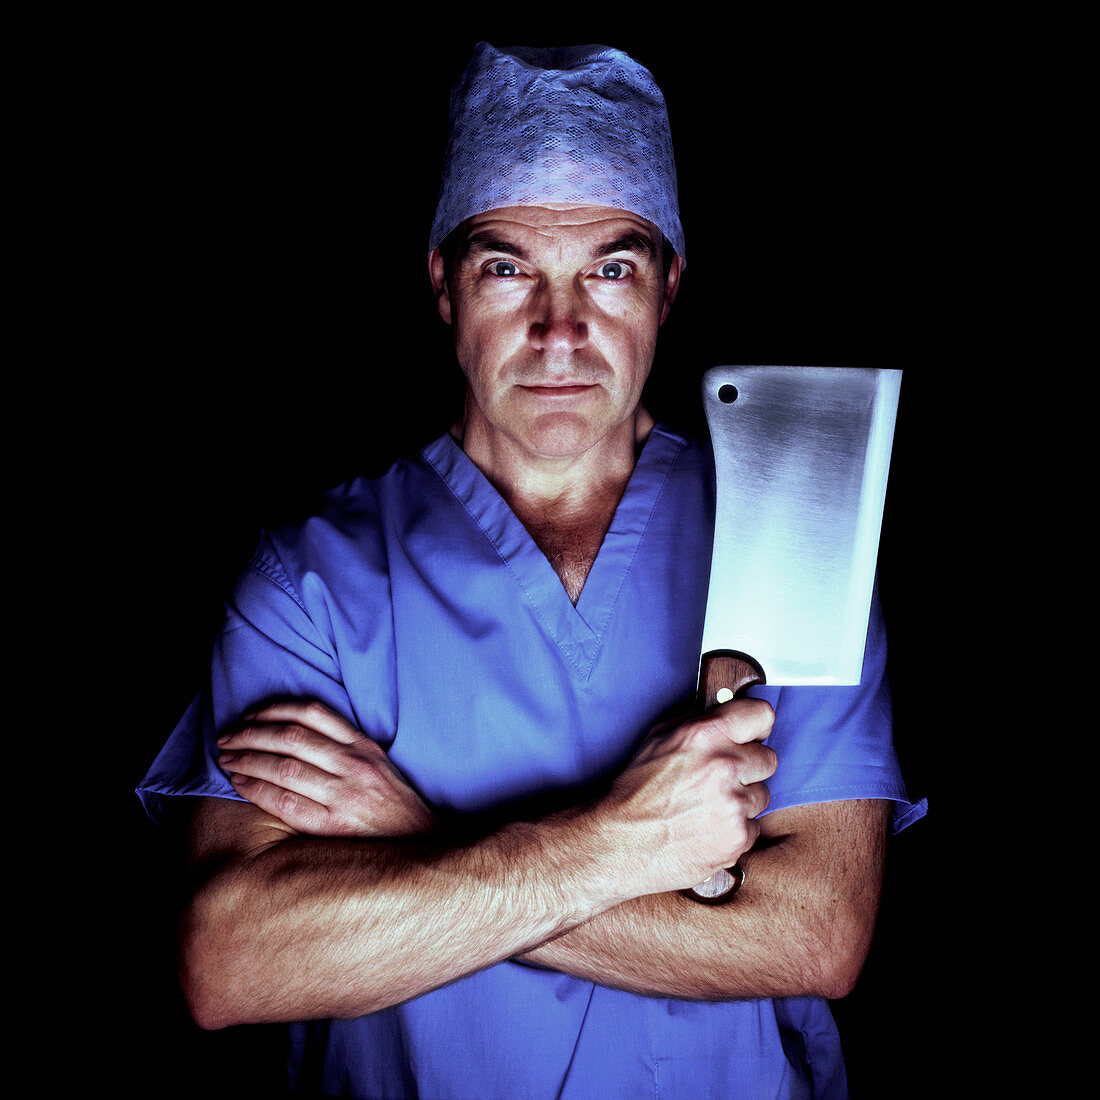 Surgeon as a butcher